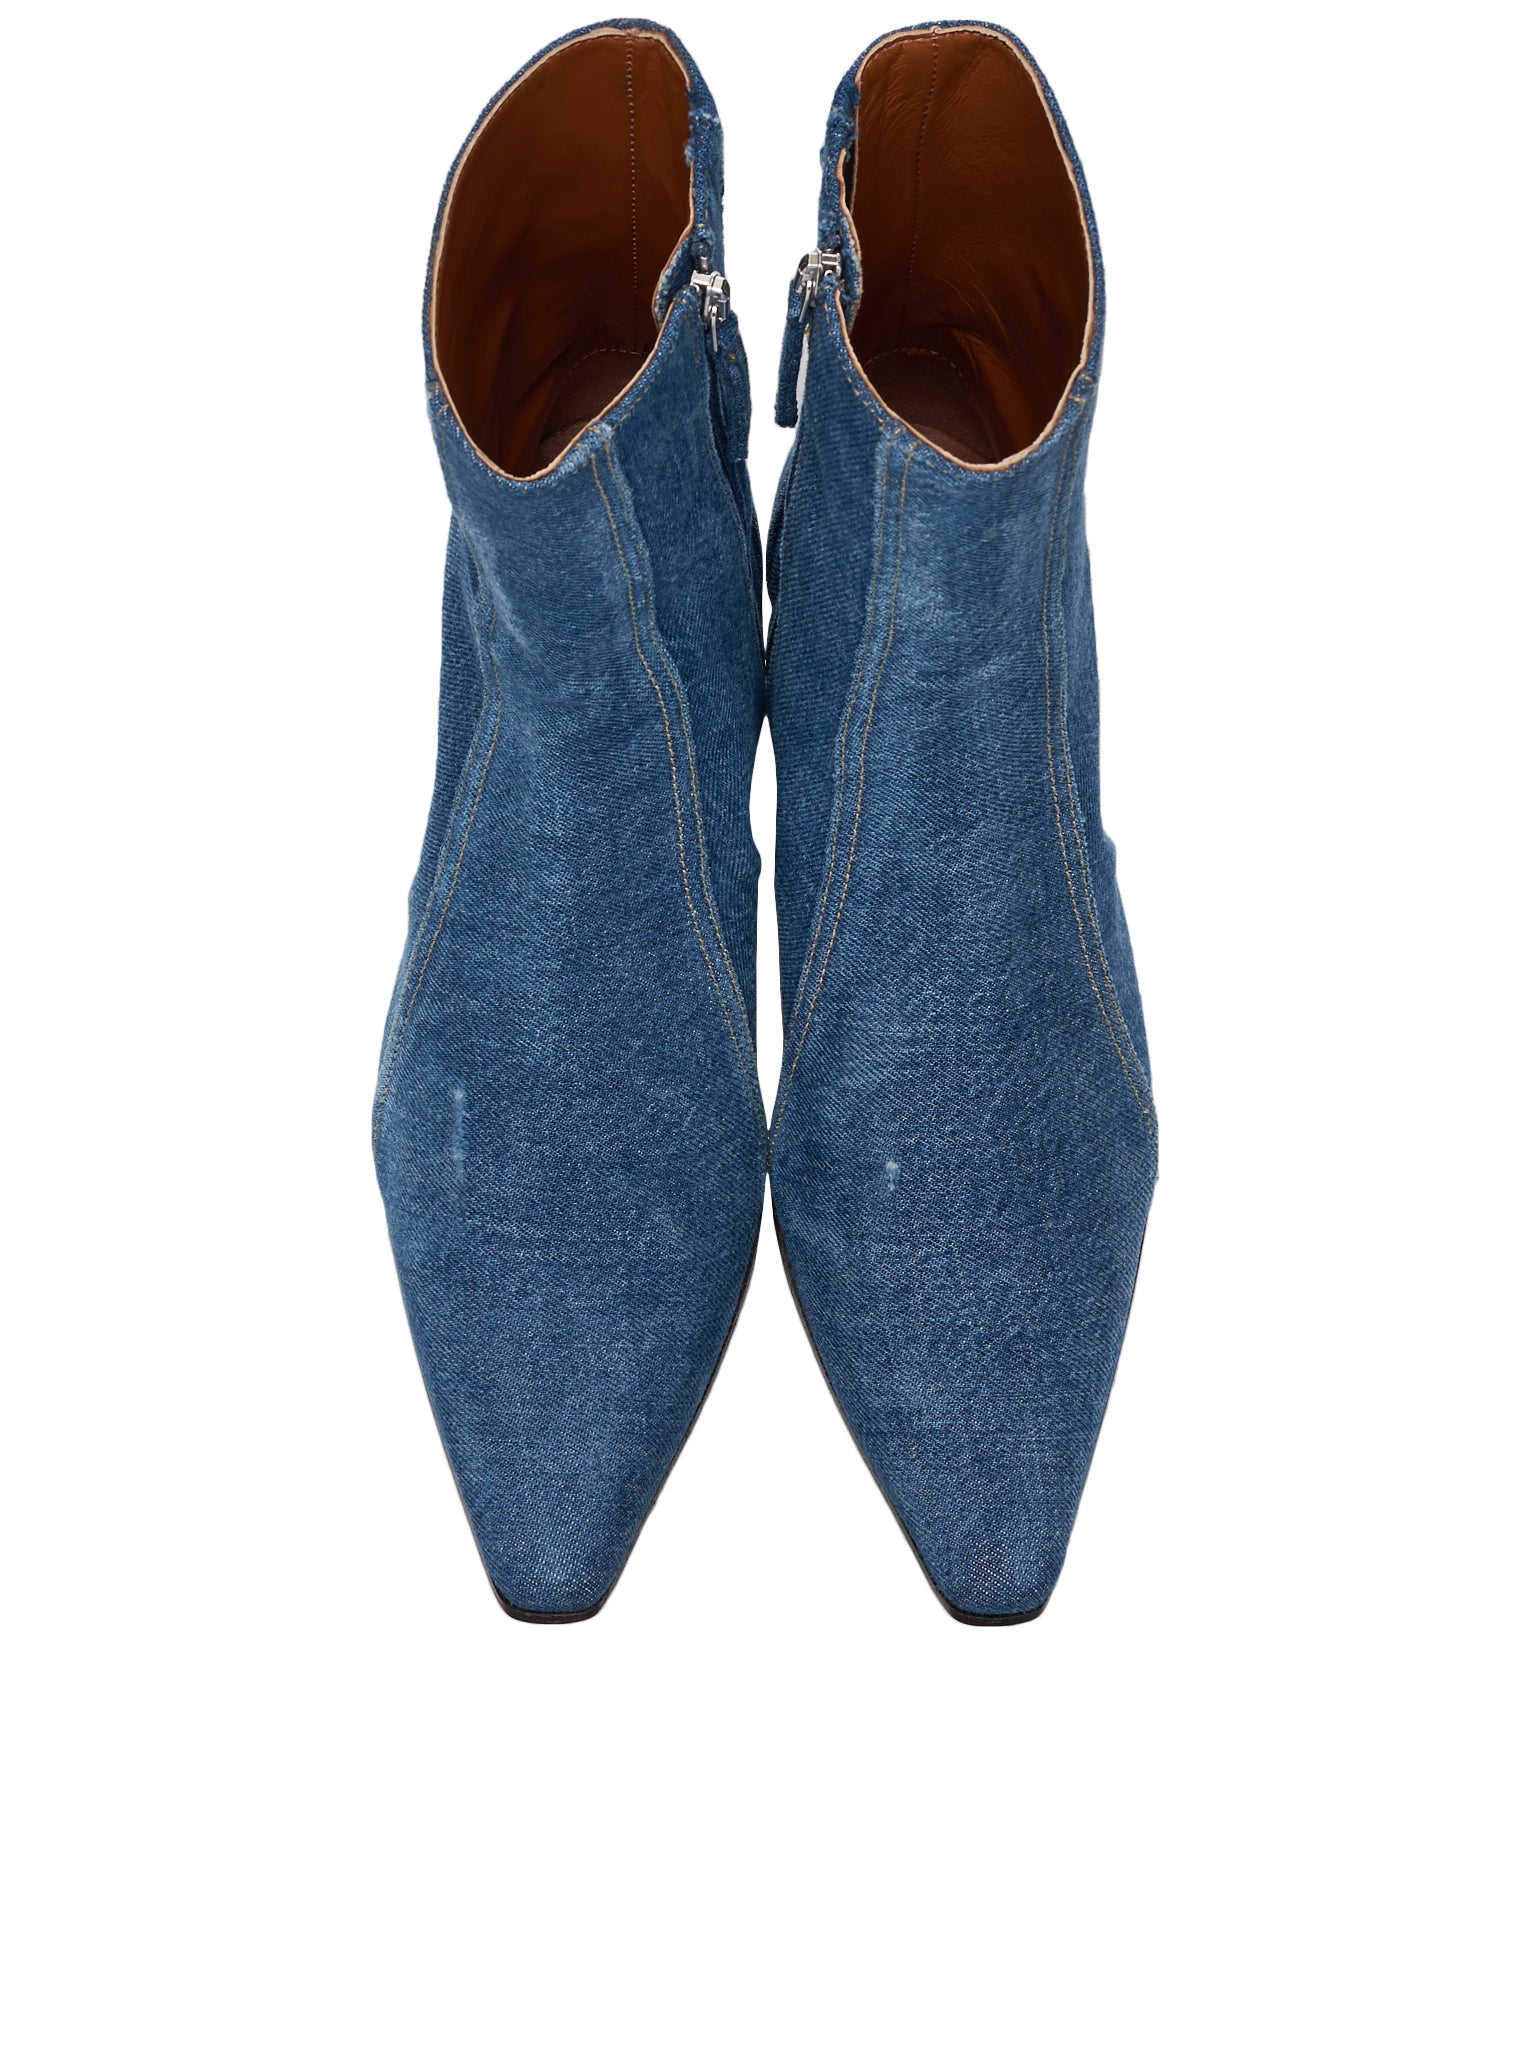 Denim Ankle Boots (SHOE000681-DENIM-BLUE)